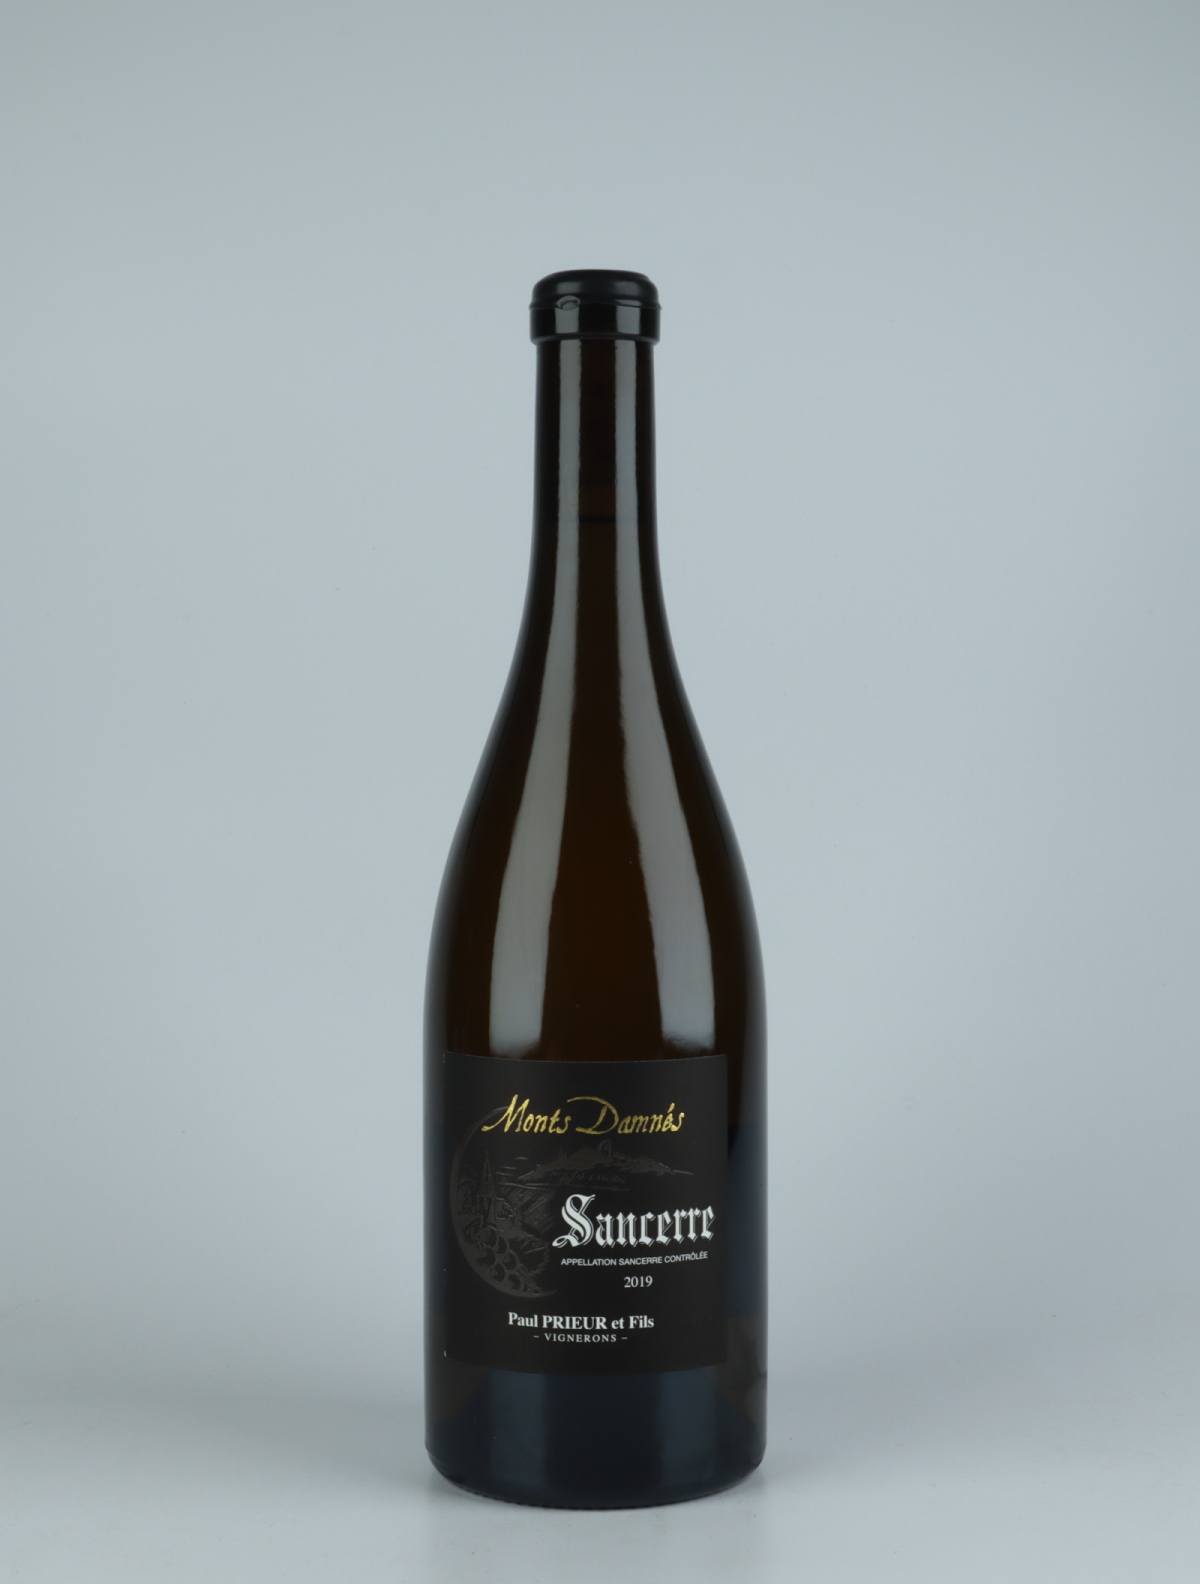 A bottle 2019 Sancerre - Les Monts Damnés White wine from Paul Prieur et Fils, Loire in France